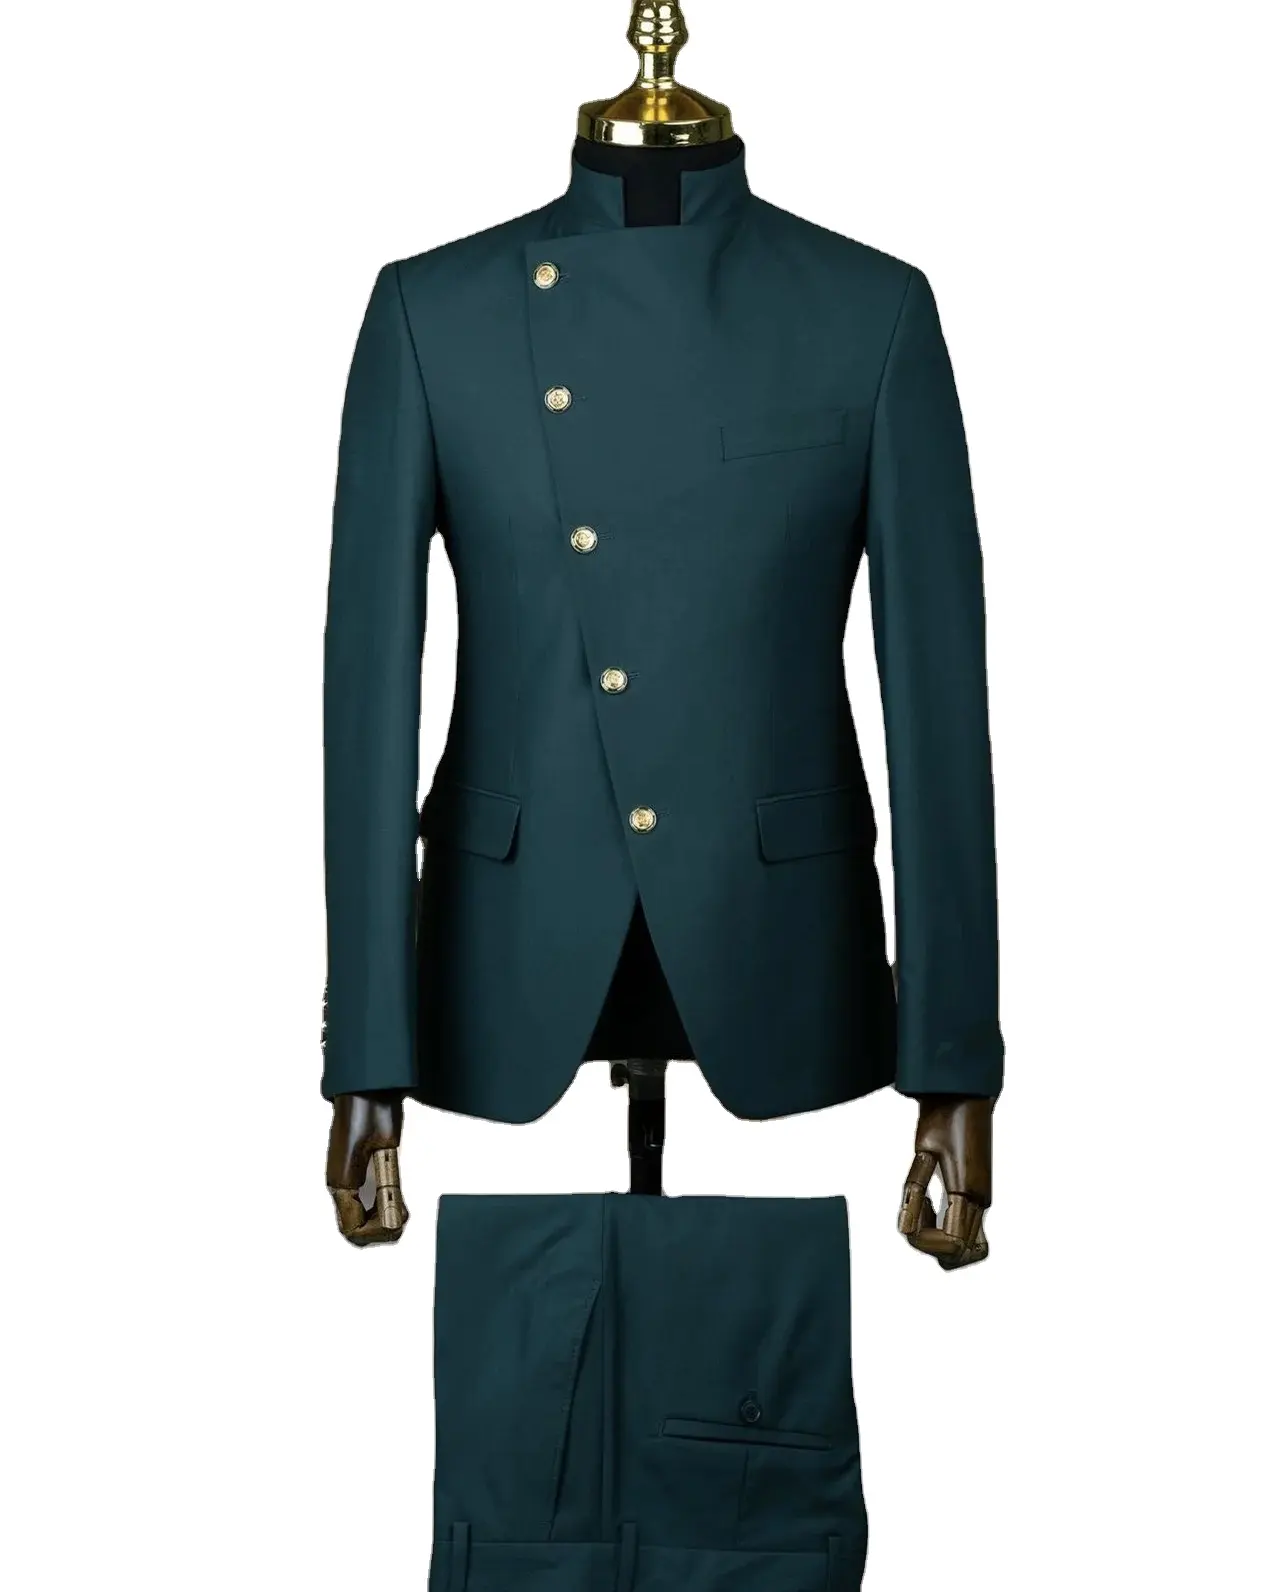 ชุดแต่งงานสีเขียวเข้มสำหรับผู้ชายชุด2ชิ้นทางการชุดอินเดียทรงสลิมฟิตพร้อมกระดุมสีทอง5เม็ด